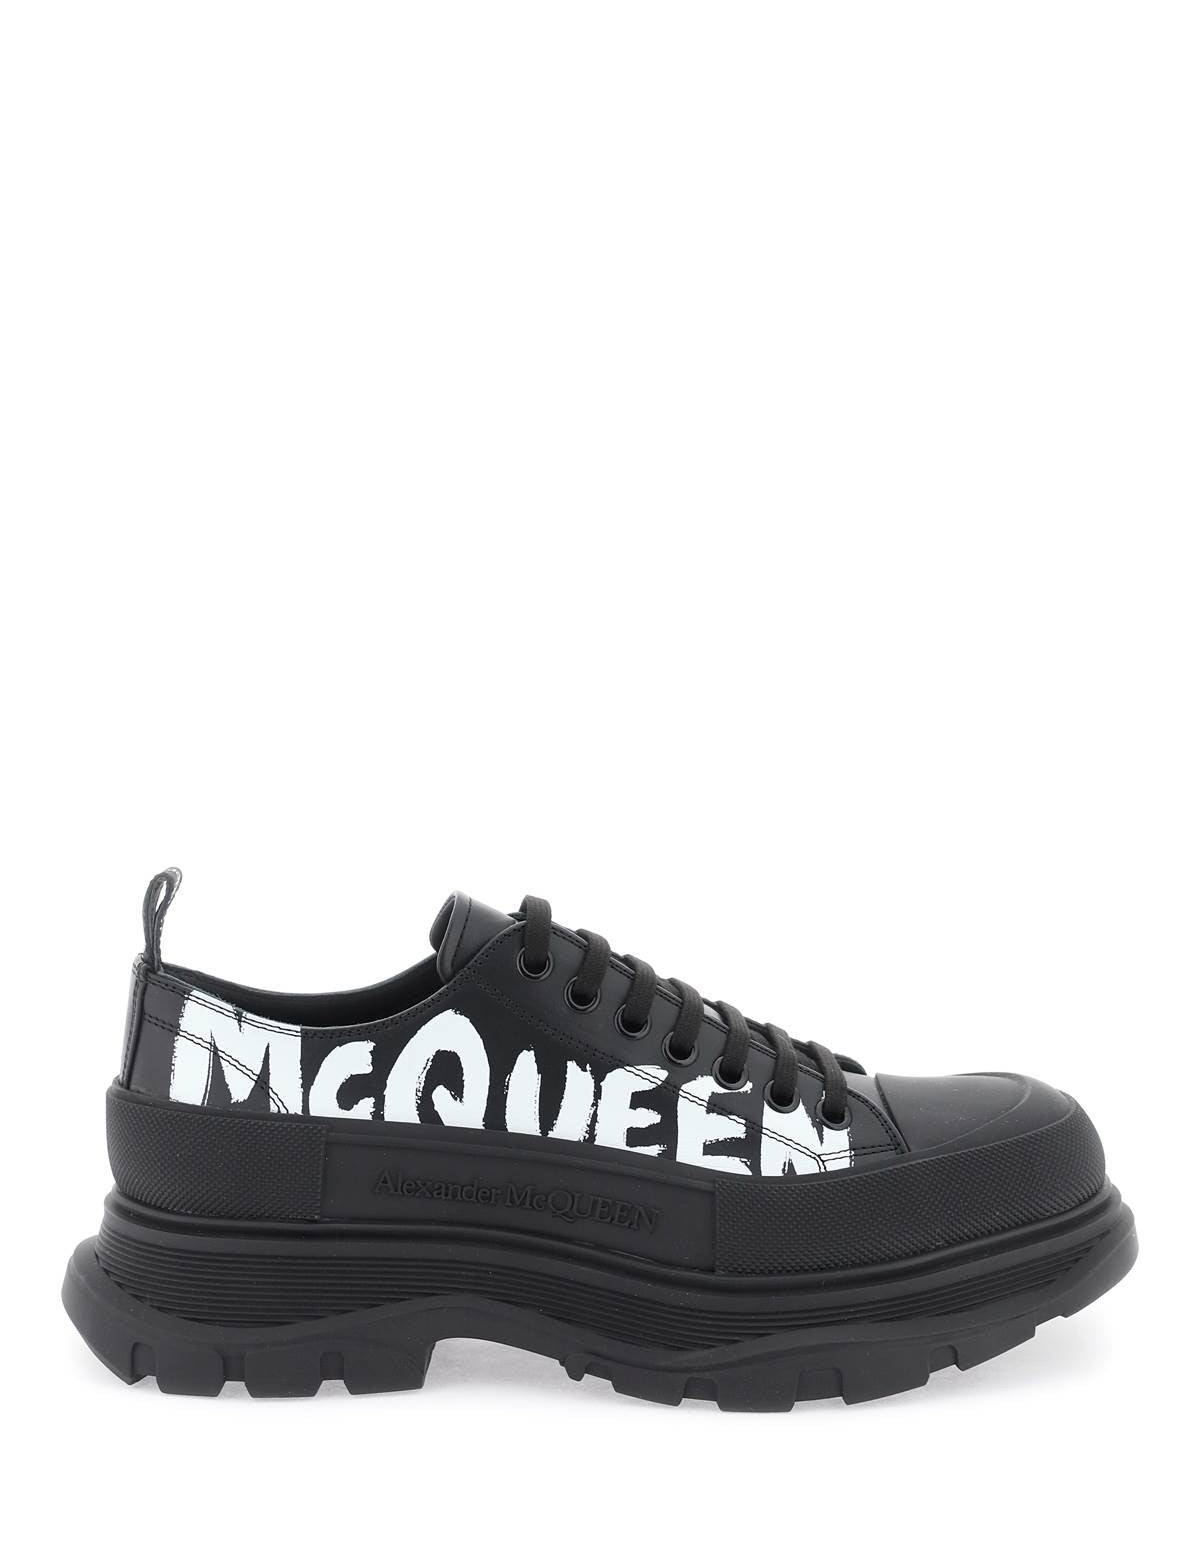 alexander-mcqueen-tread-slick-graffiti-sneakers.jpg